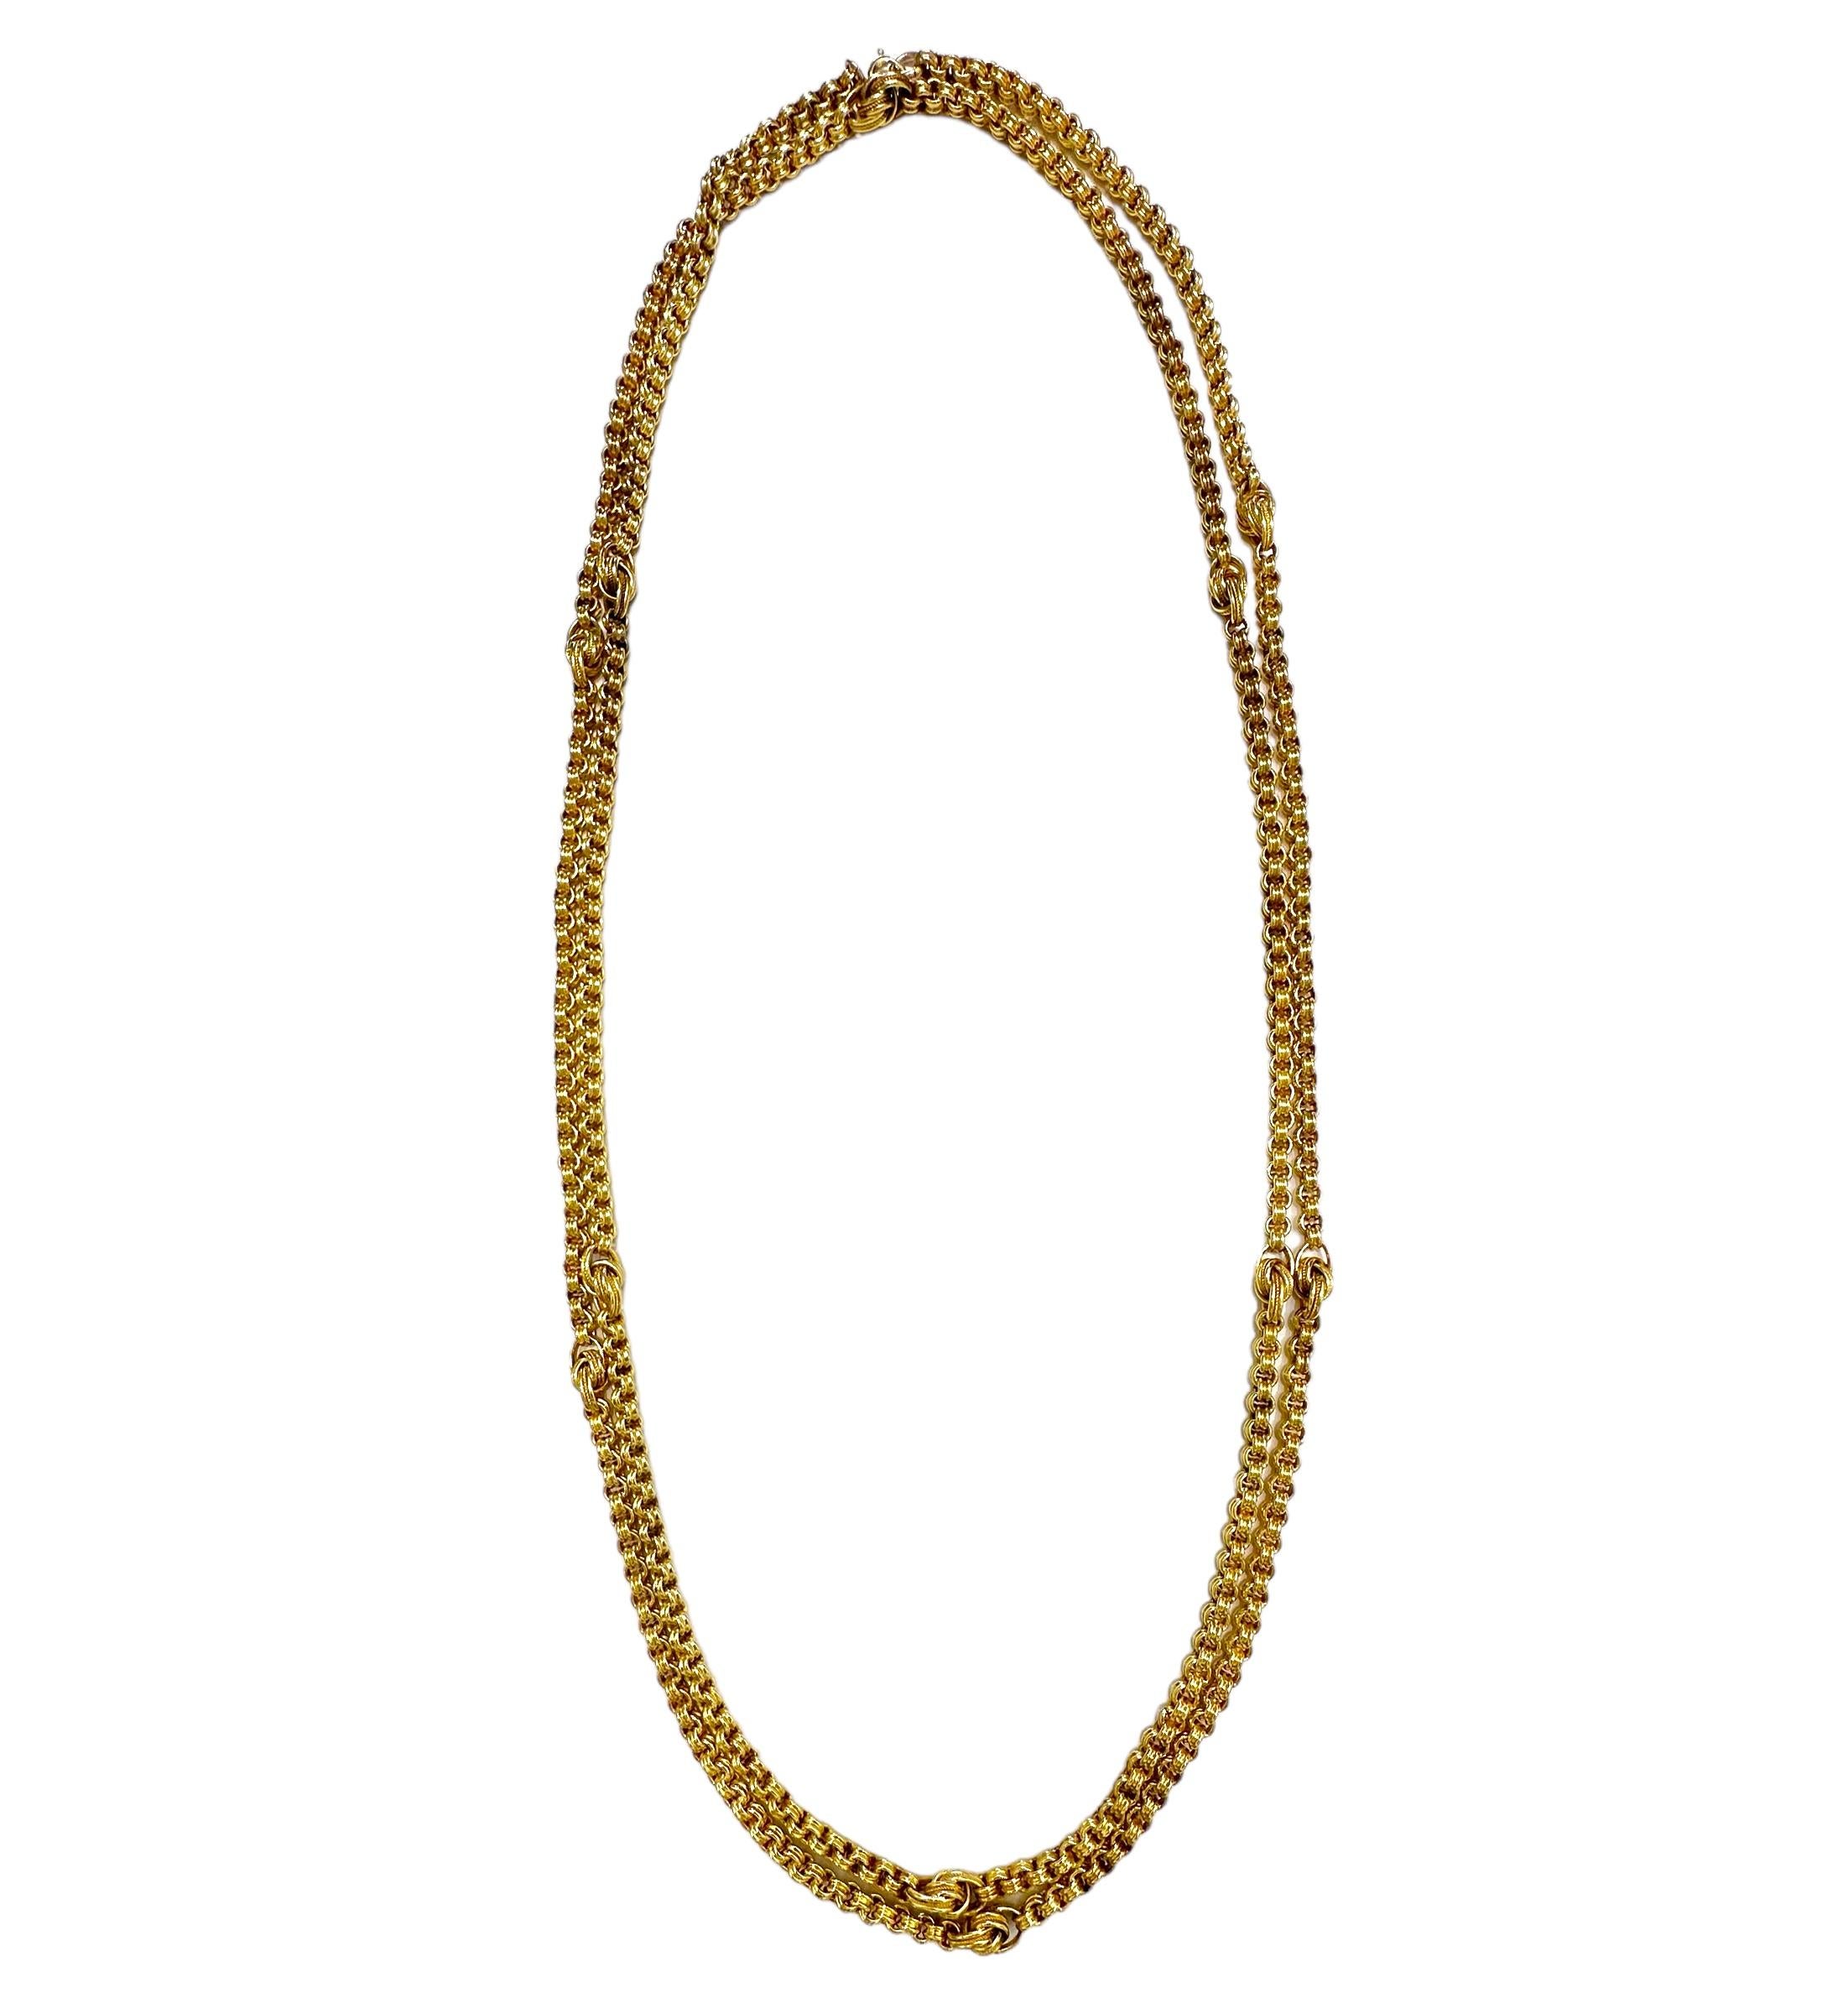 Diese interessante 55 Zoll lange 15k Gelbgold viktorianischen Zeitraum britische Halskette besteht aus einer einzigen Zeile der doppelten Spirale Links durch Knoten Motiv Links in 4 1/4 Zoll Abständen unterbrochen. Die Knotenglieder sind größere